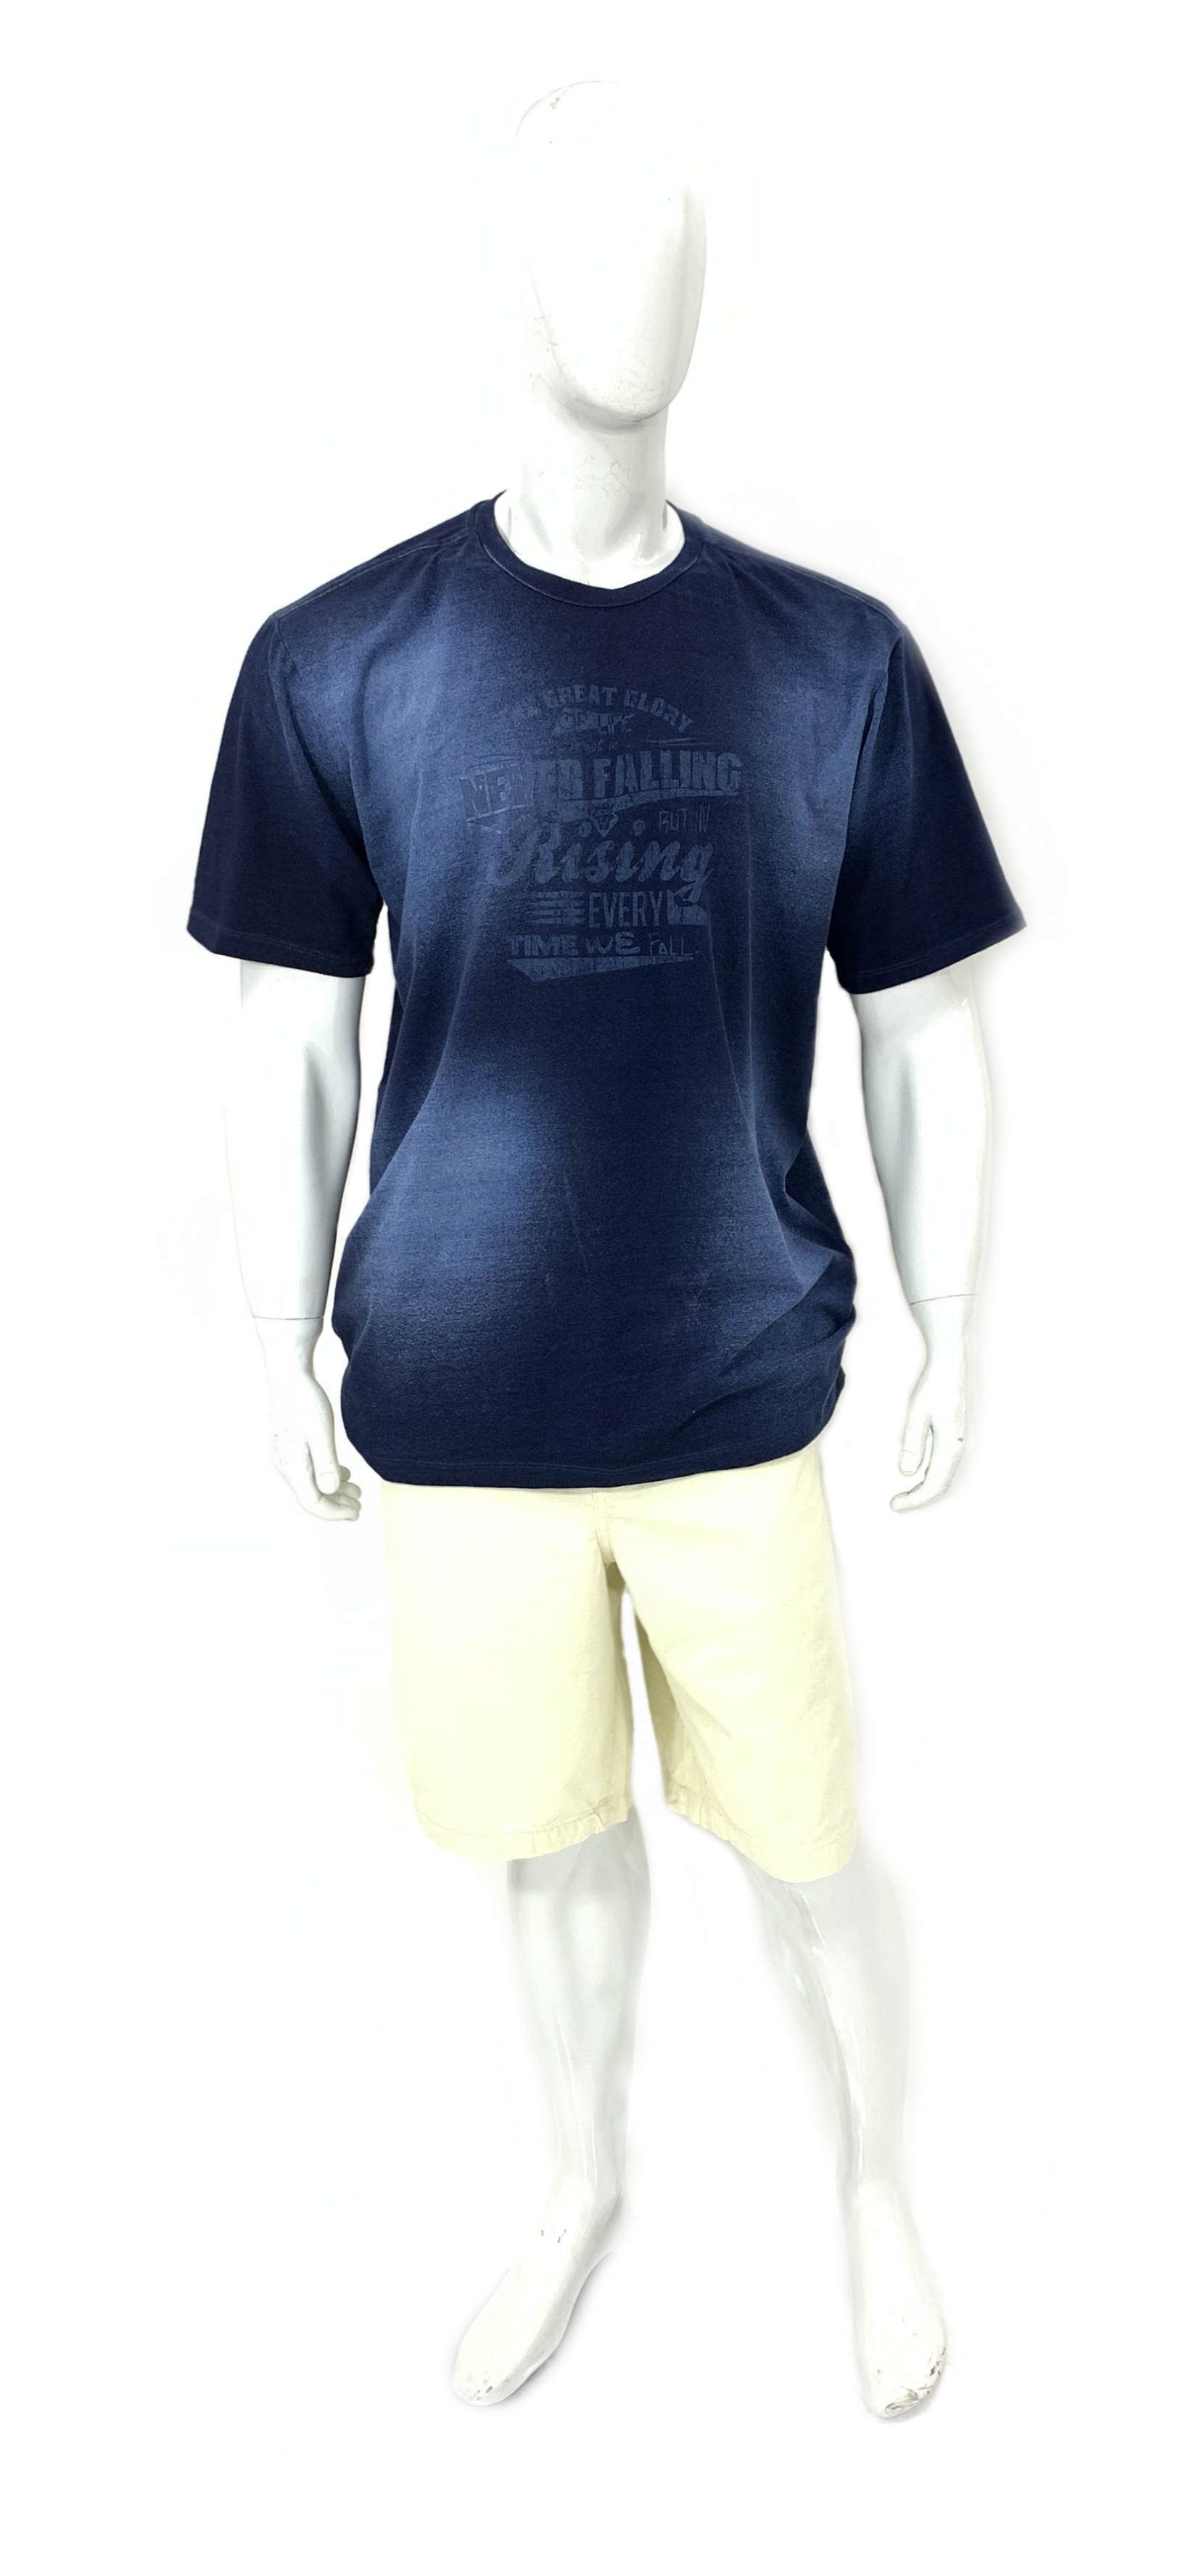 Camiseta Plus Size Ref 08888 / Bermuda Plus Size de Sarja Ref 08887